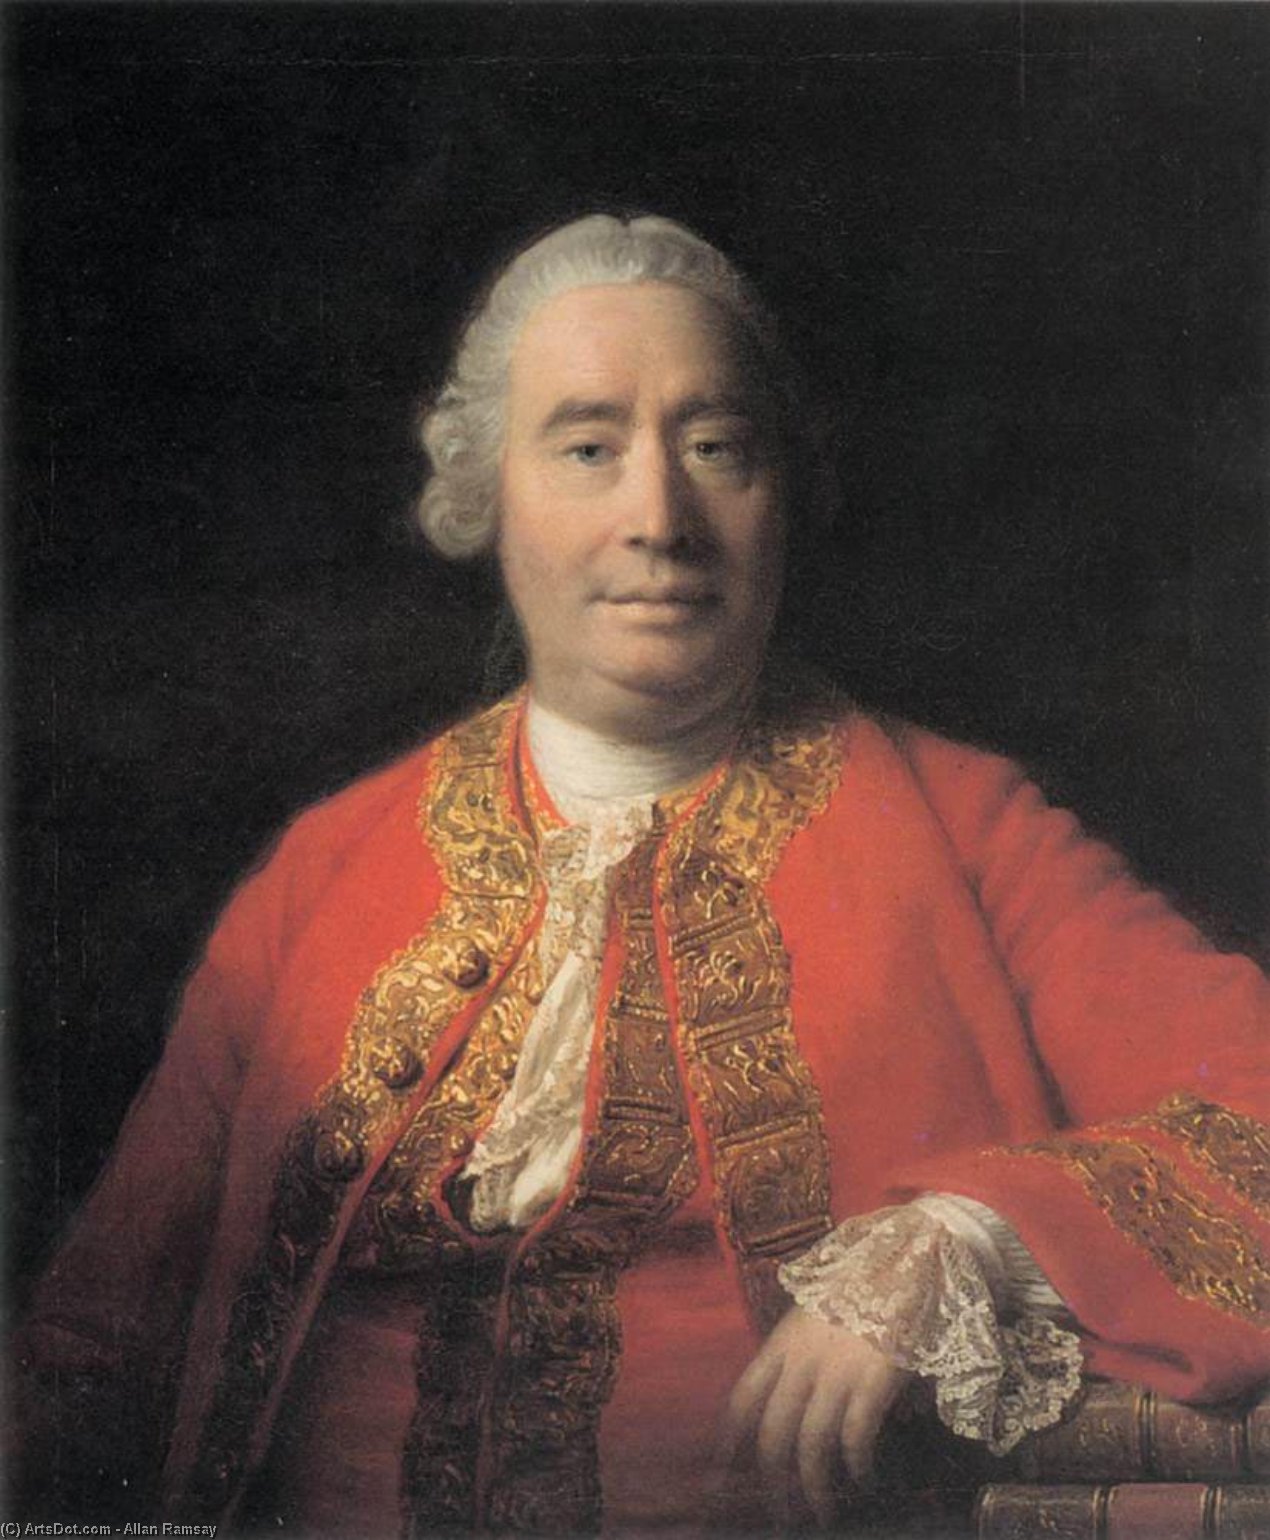 Compra Riproduzioni D'arte Del Museo Ritratto di David Hume, 1766 di Allan Ramsay | ArtsDot.com